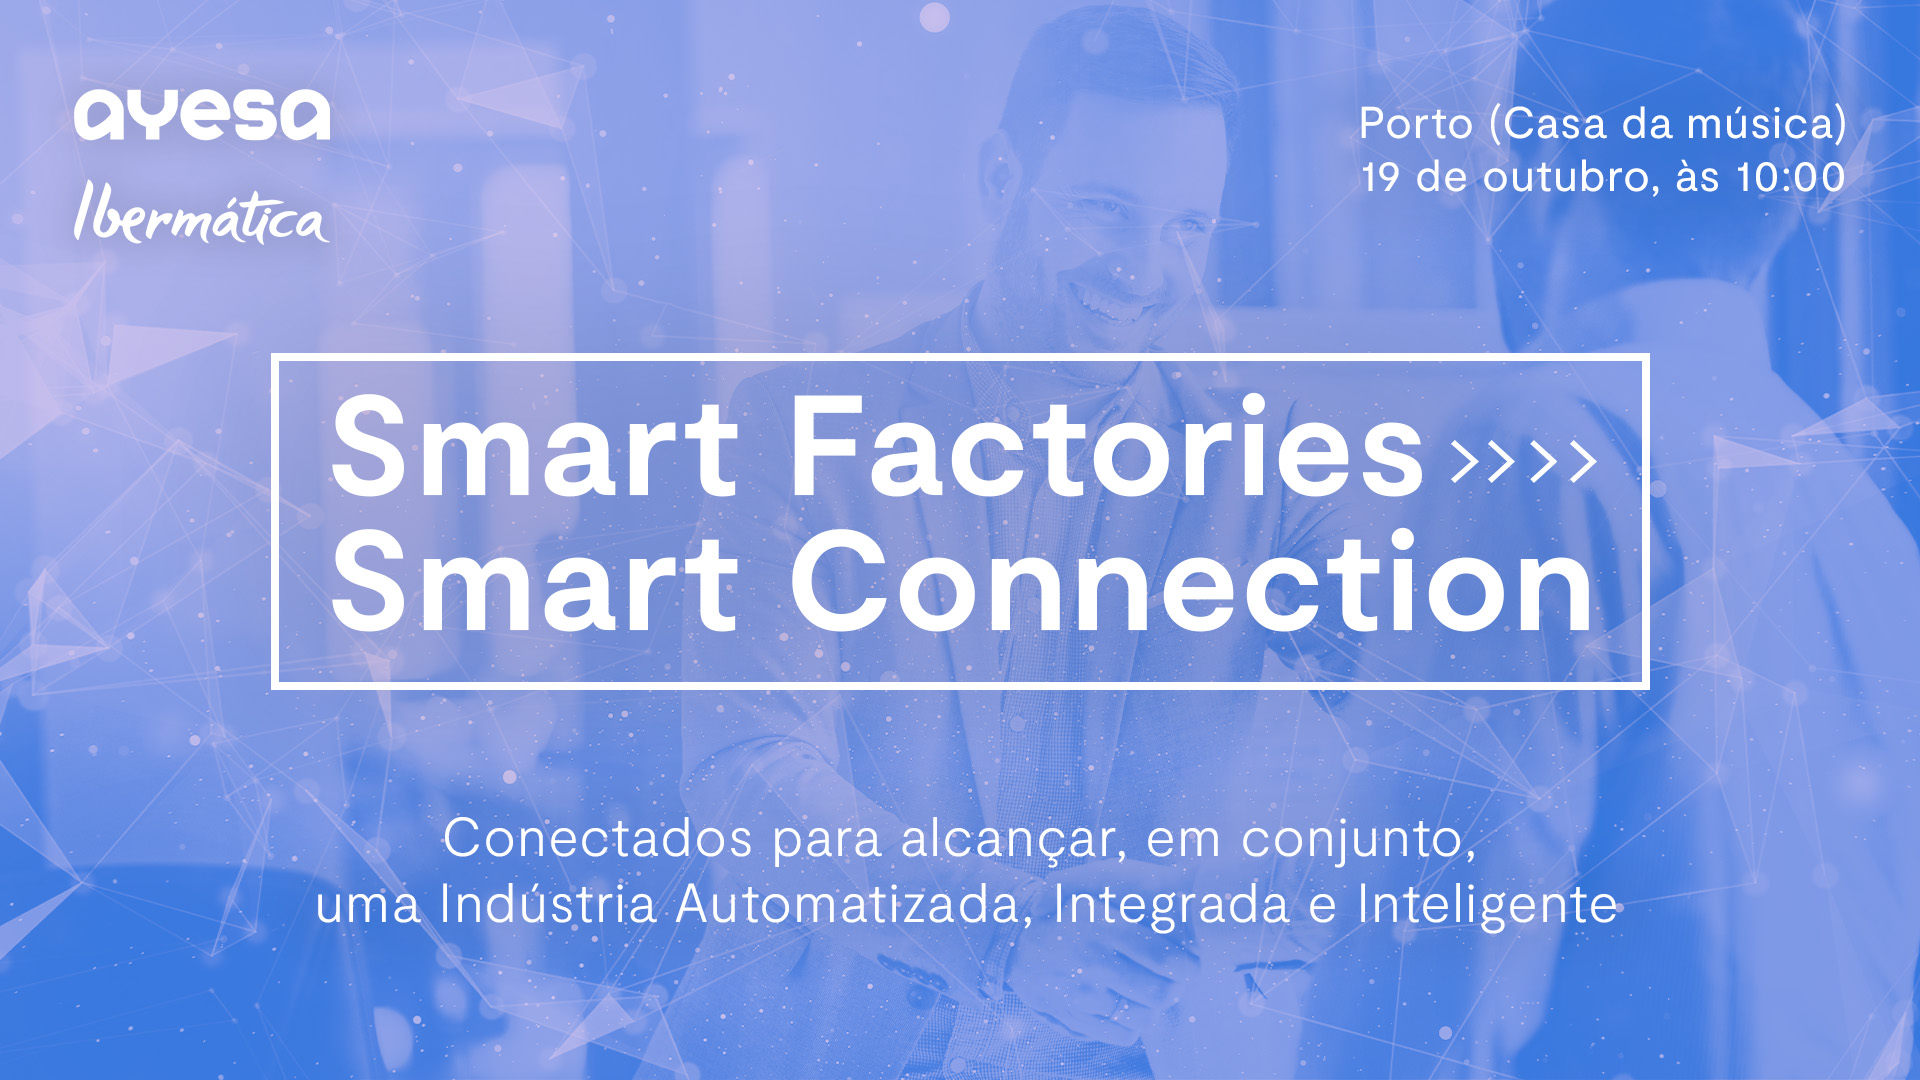 Ibermática an Ayesa company | Evento “Smart Factories ></noscript>> Smart Connection” - Porto, 19 outubro